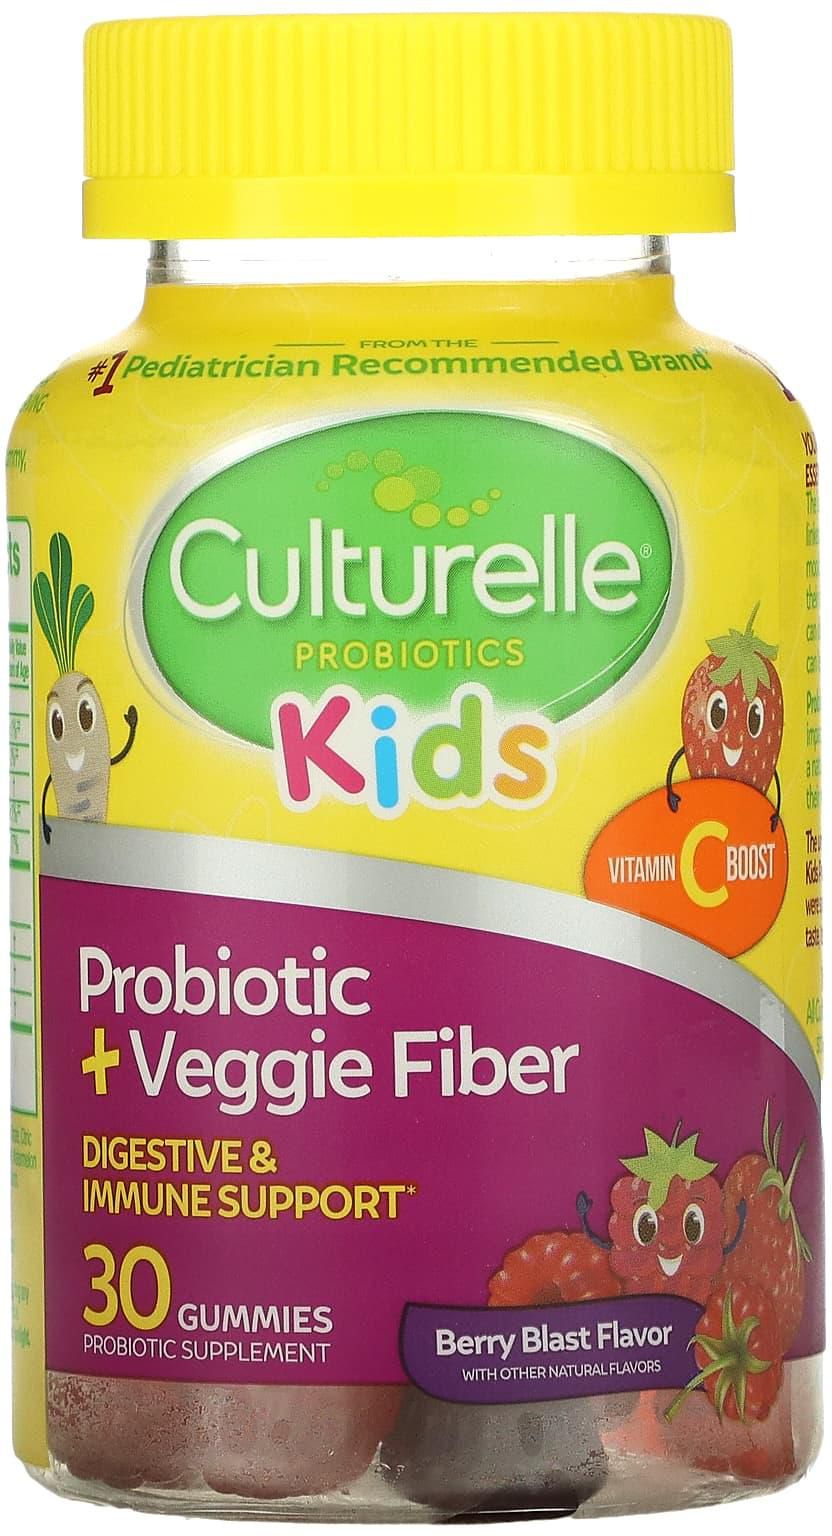 Culturelle (كالتورال)‏, علكات بروبيوتيك للأطفال، نكهة معززة من التوت، 30 علكة مرة واحدة يوميًا